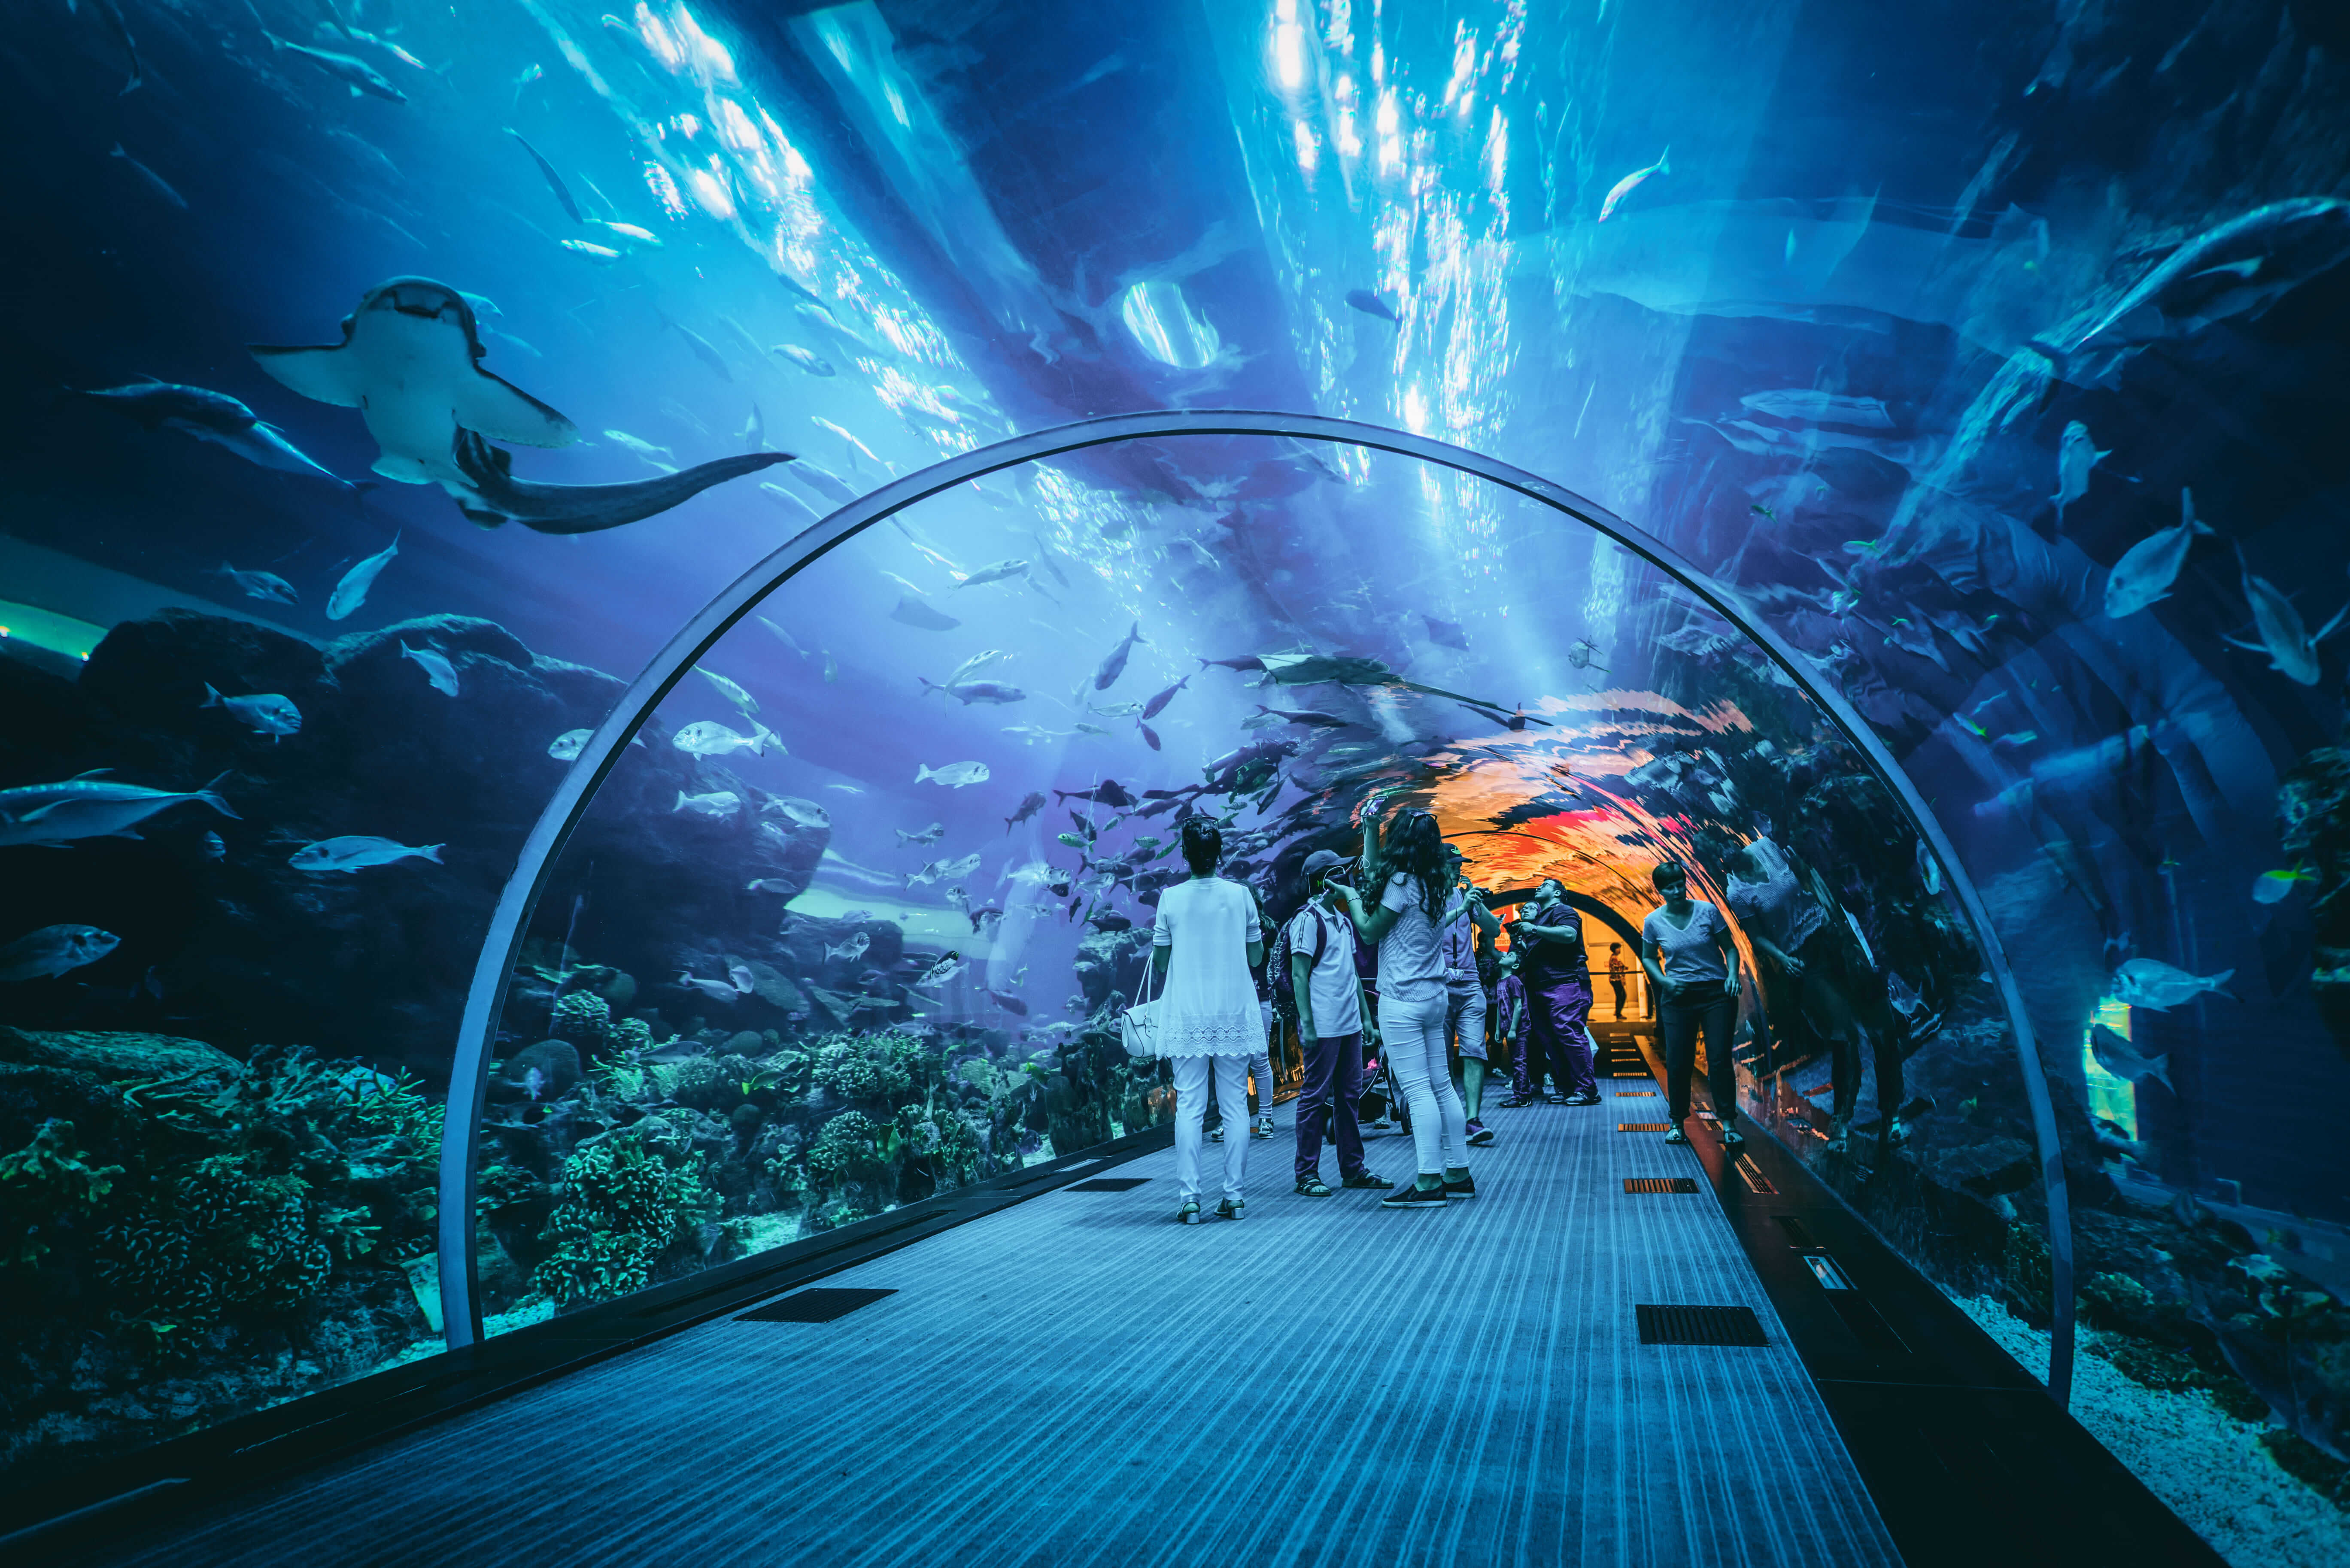 Visit Dubai Aquarium Underwater Zoo Plus Burj Khalifa On An Exciting Combo Tour!